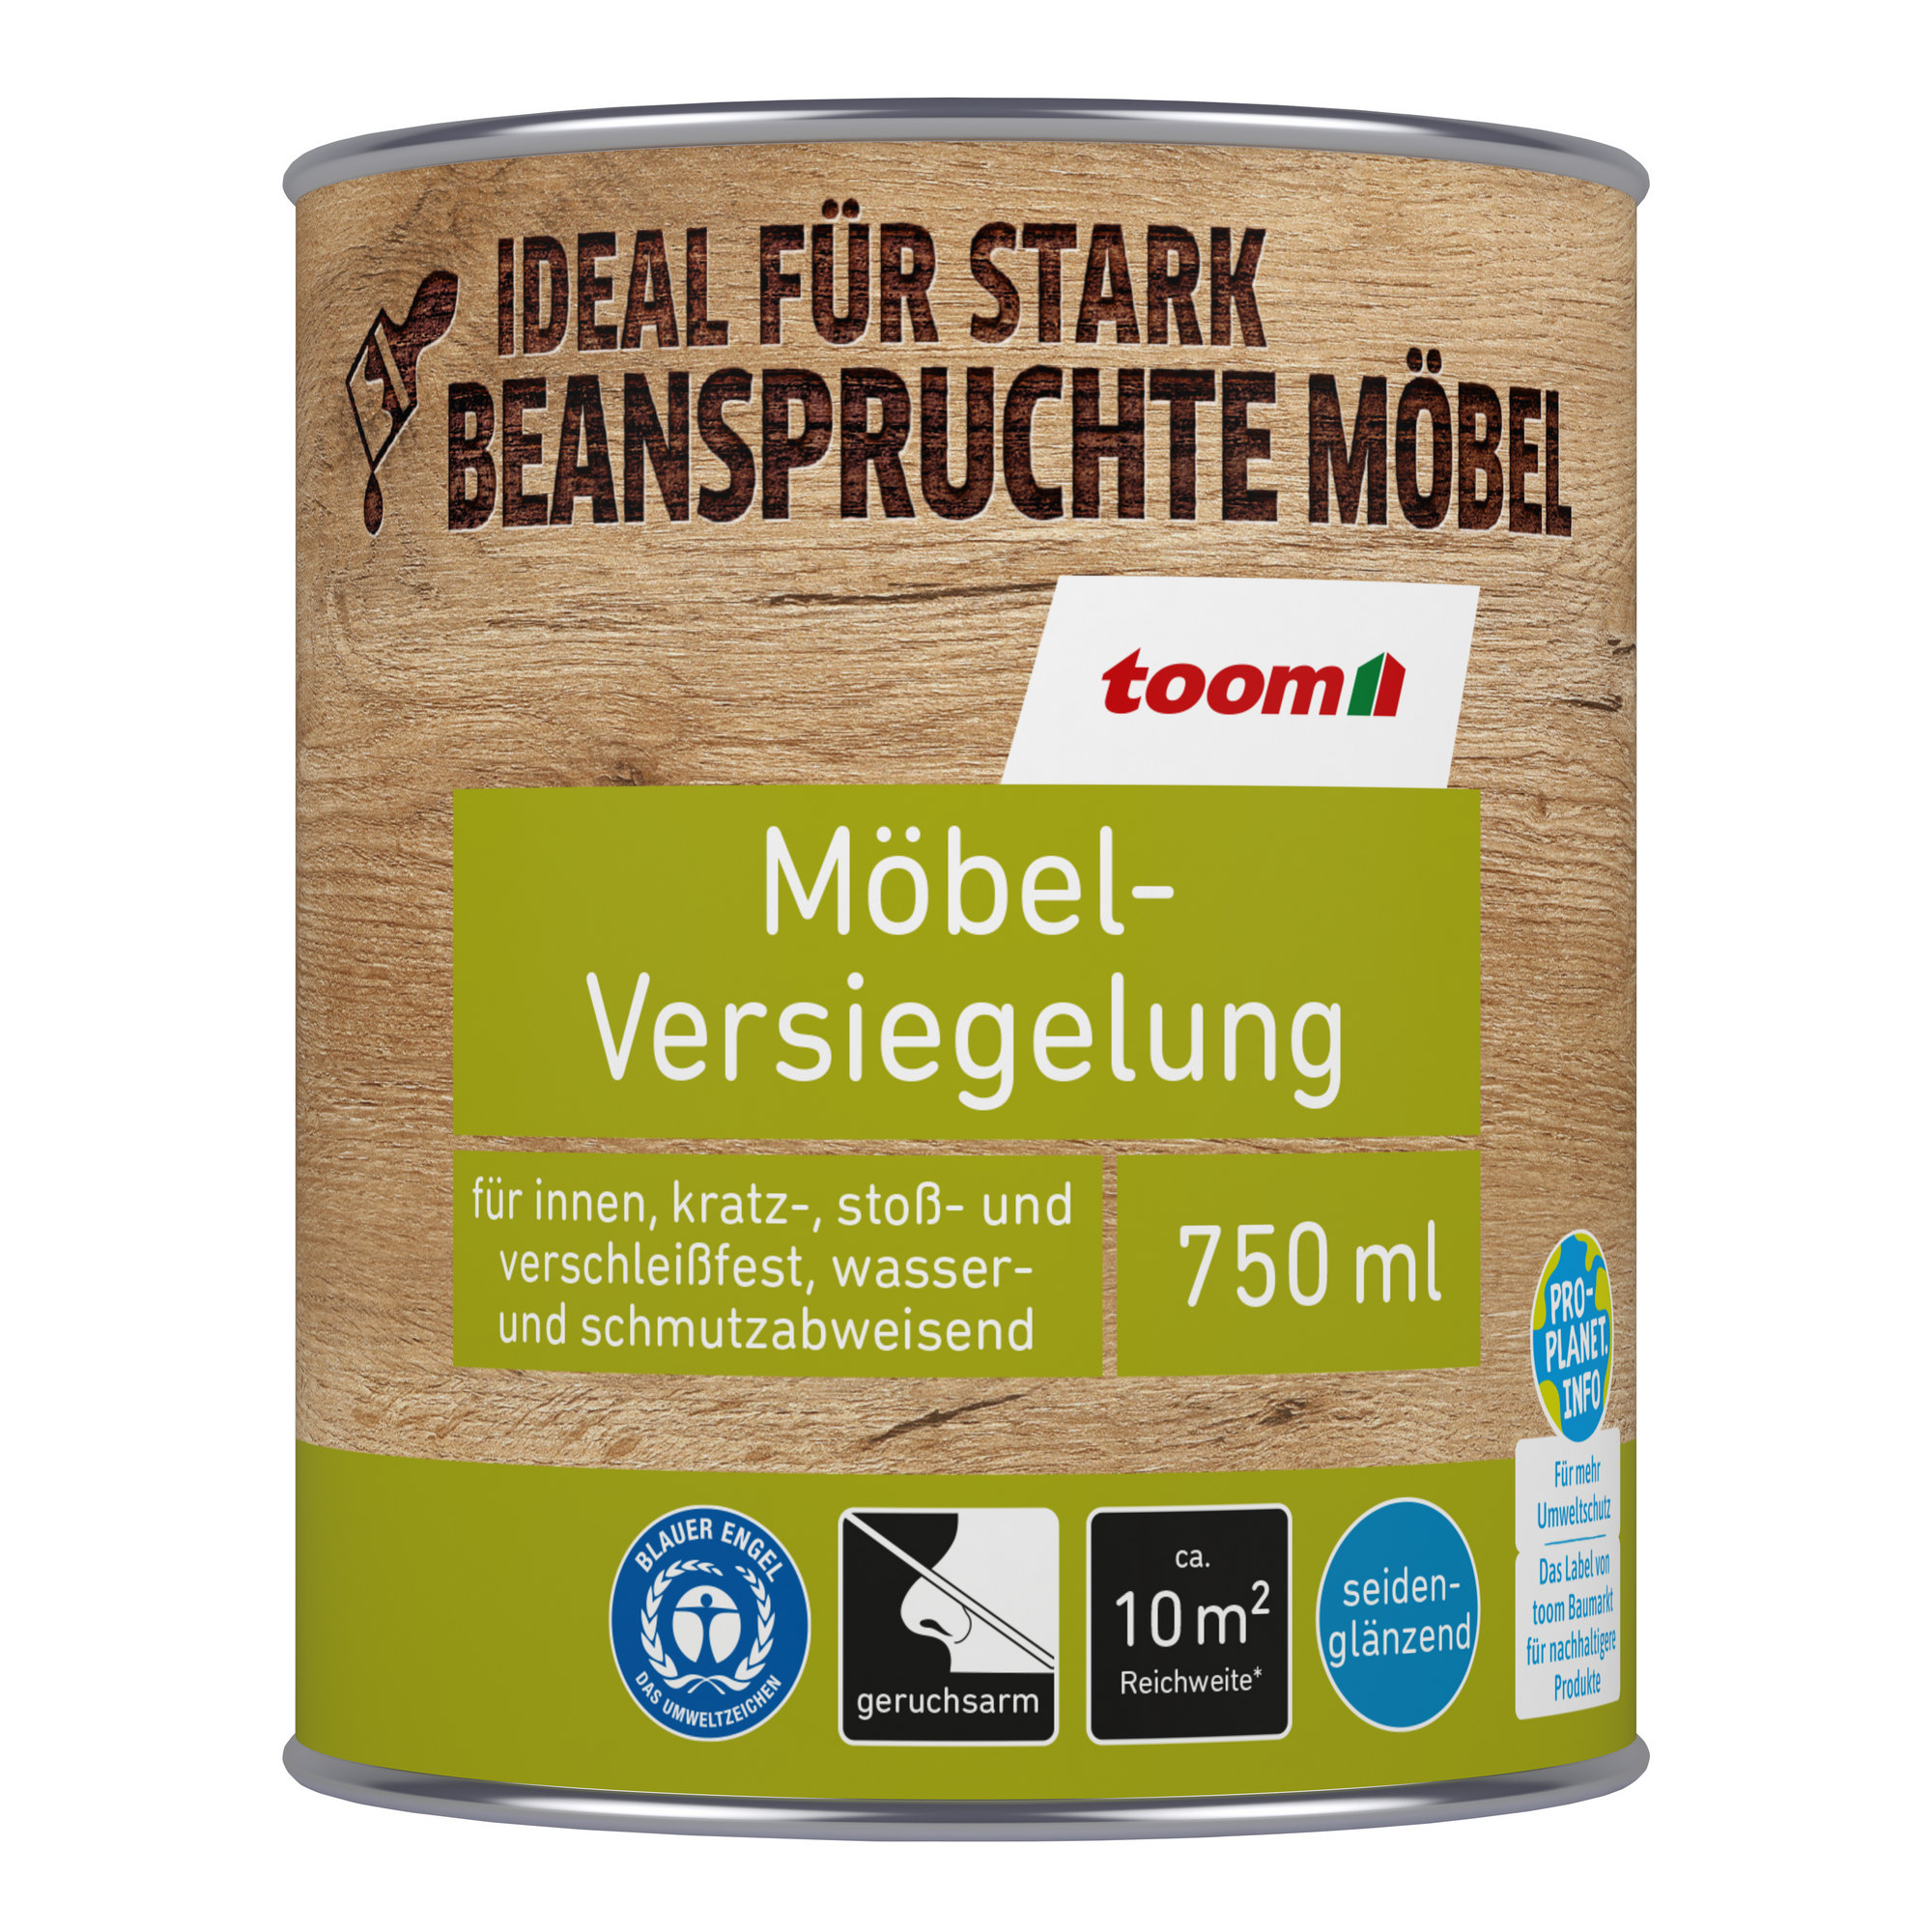 Möbel-Versiegelung teakfarben 750 ml + product picture